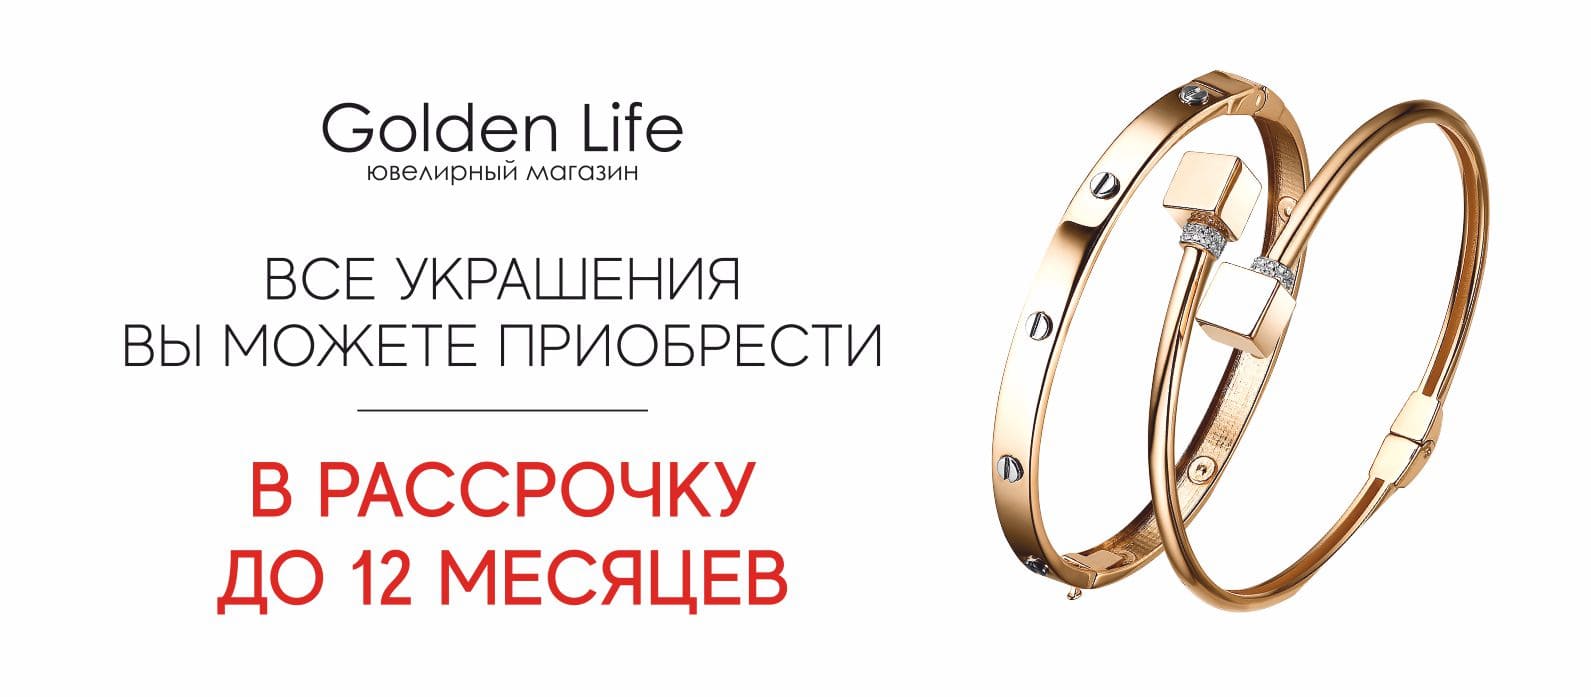 Все украшения вы можете приобрести в рассрочку в интернет-магазине ювелирных украшений GoldenLife г. Краснодар